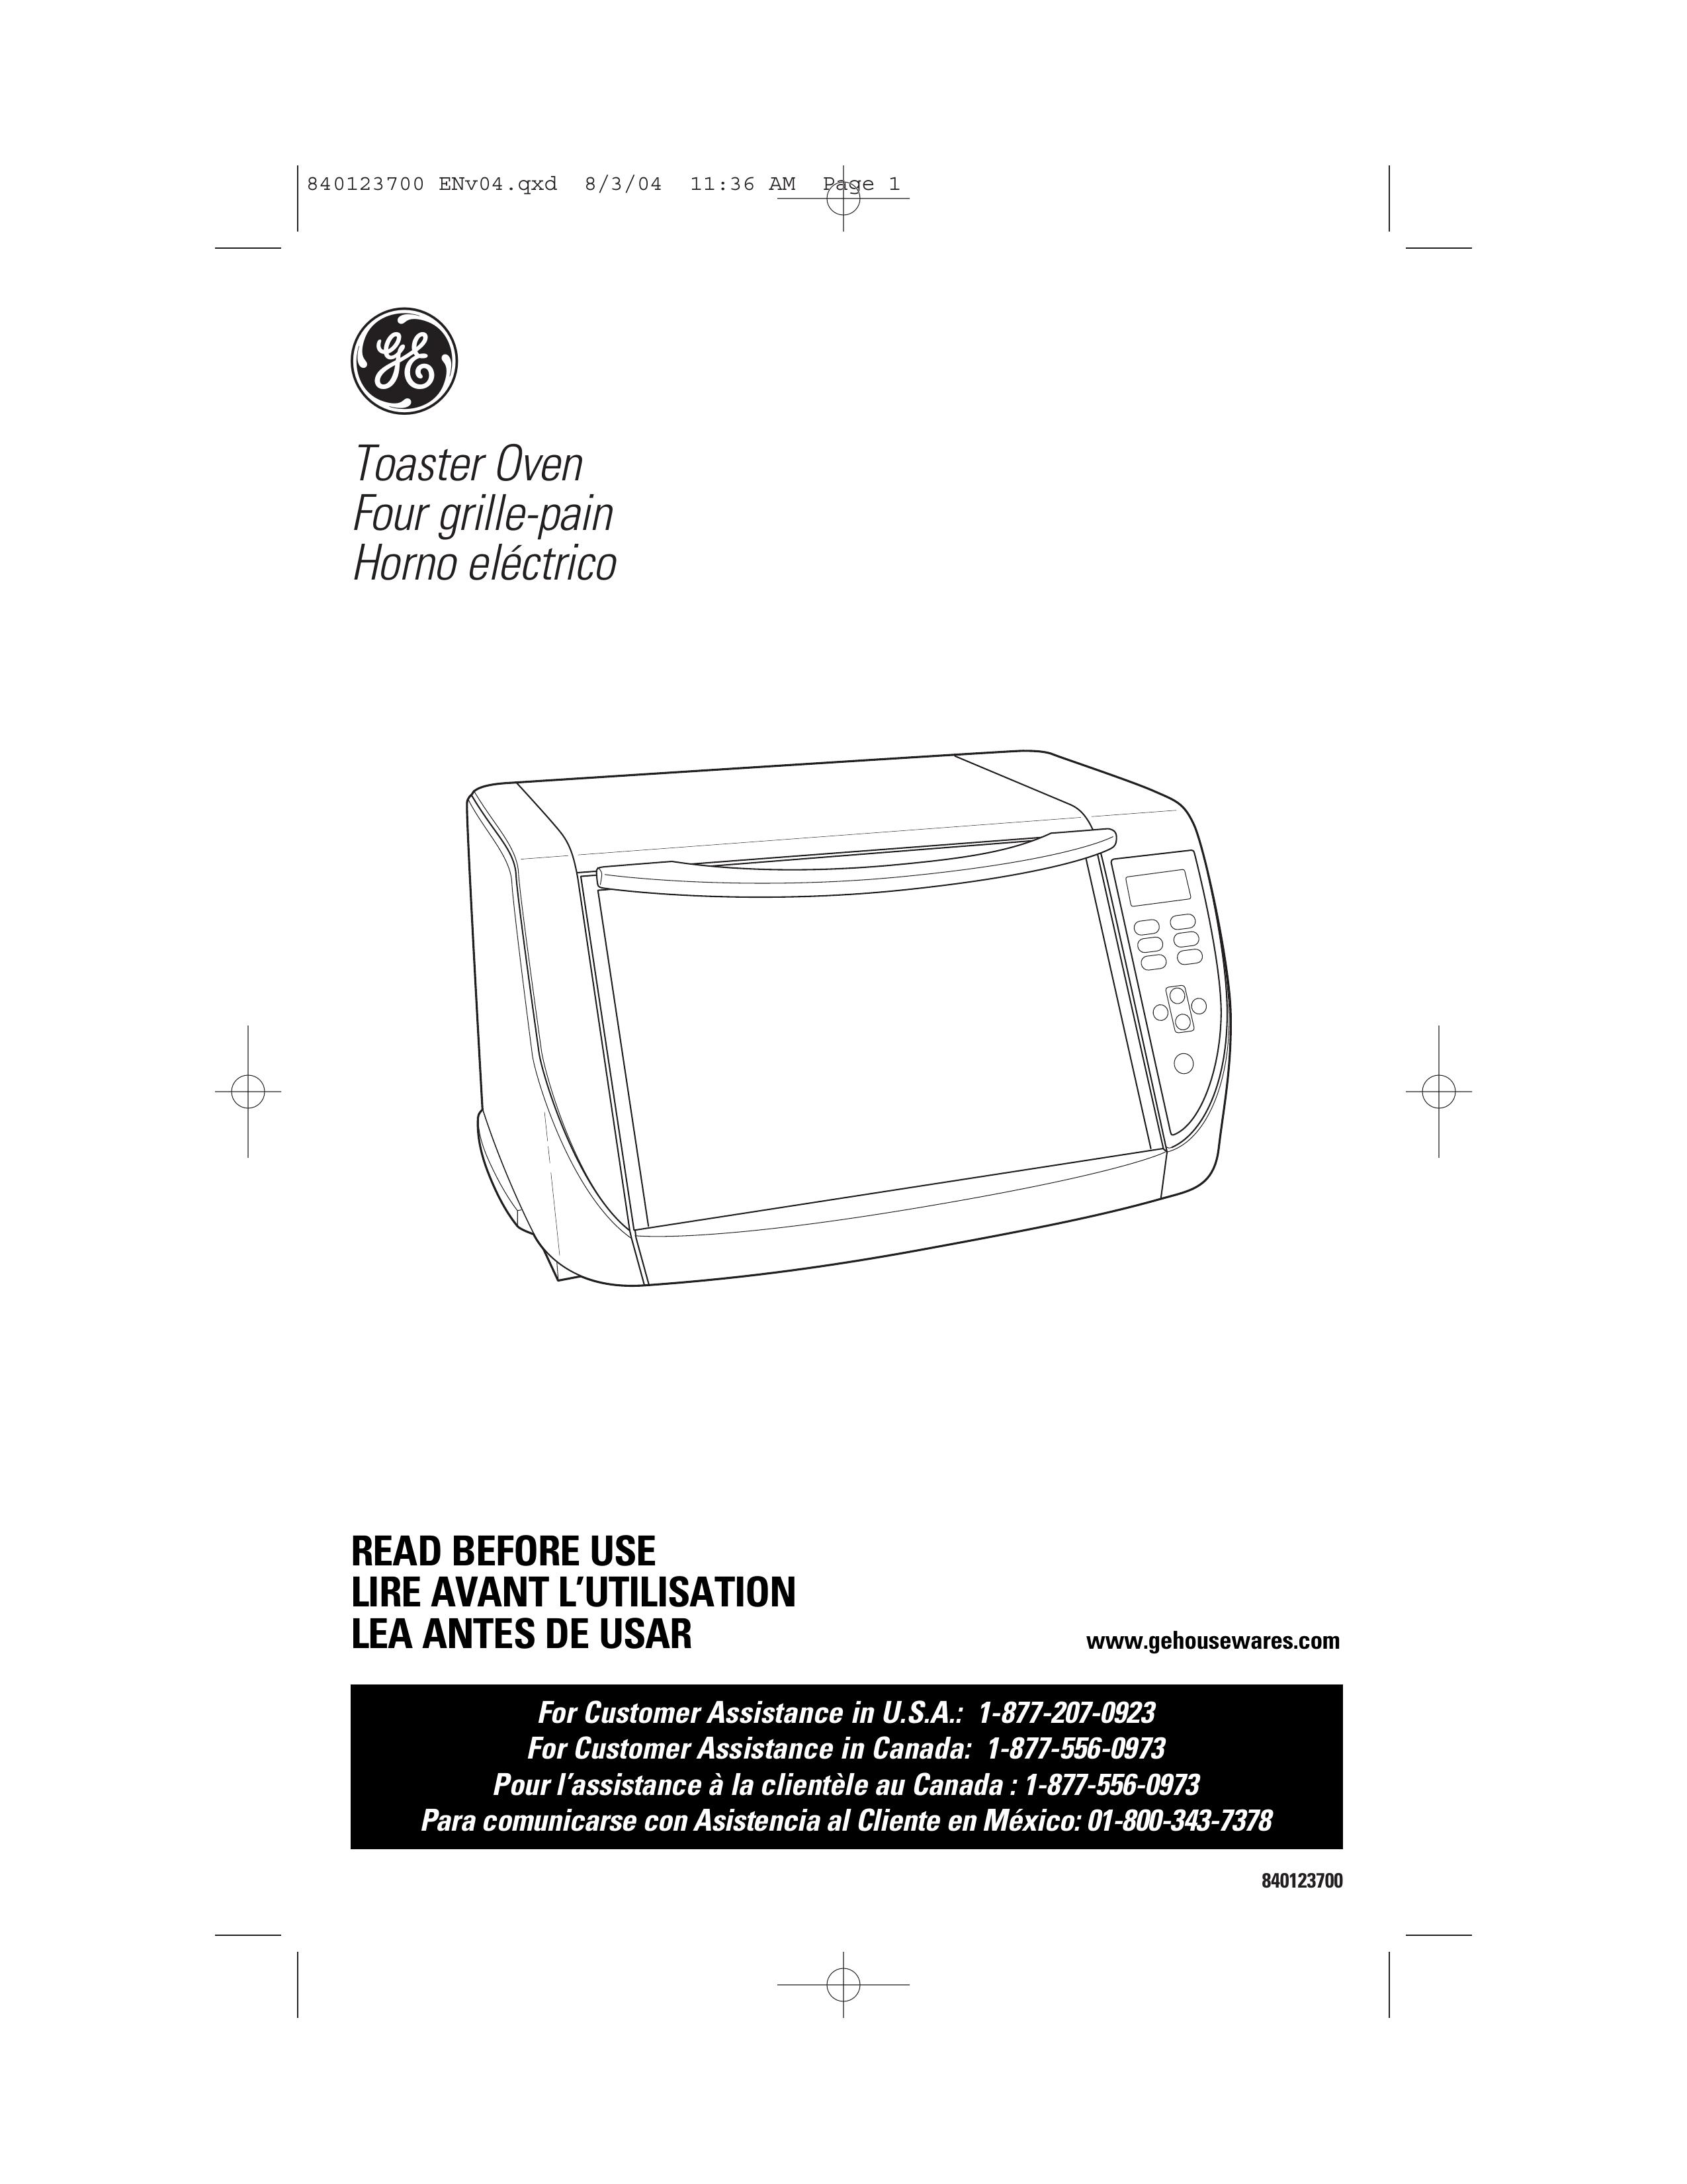 GE 168989 Toaster User Manual